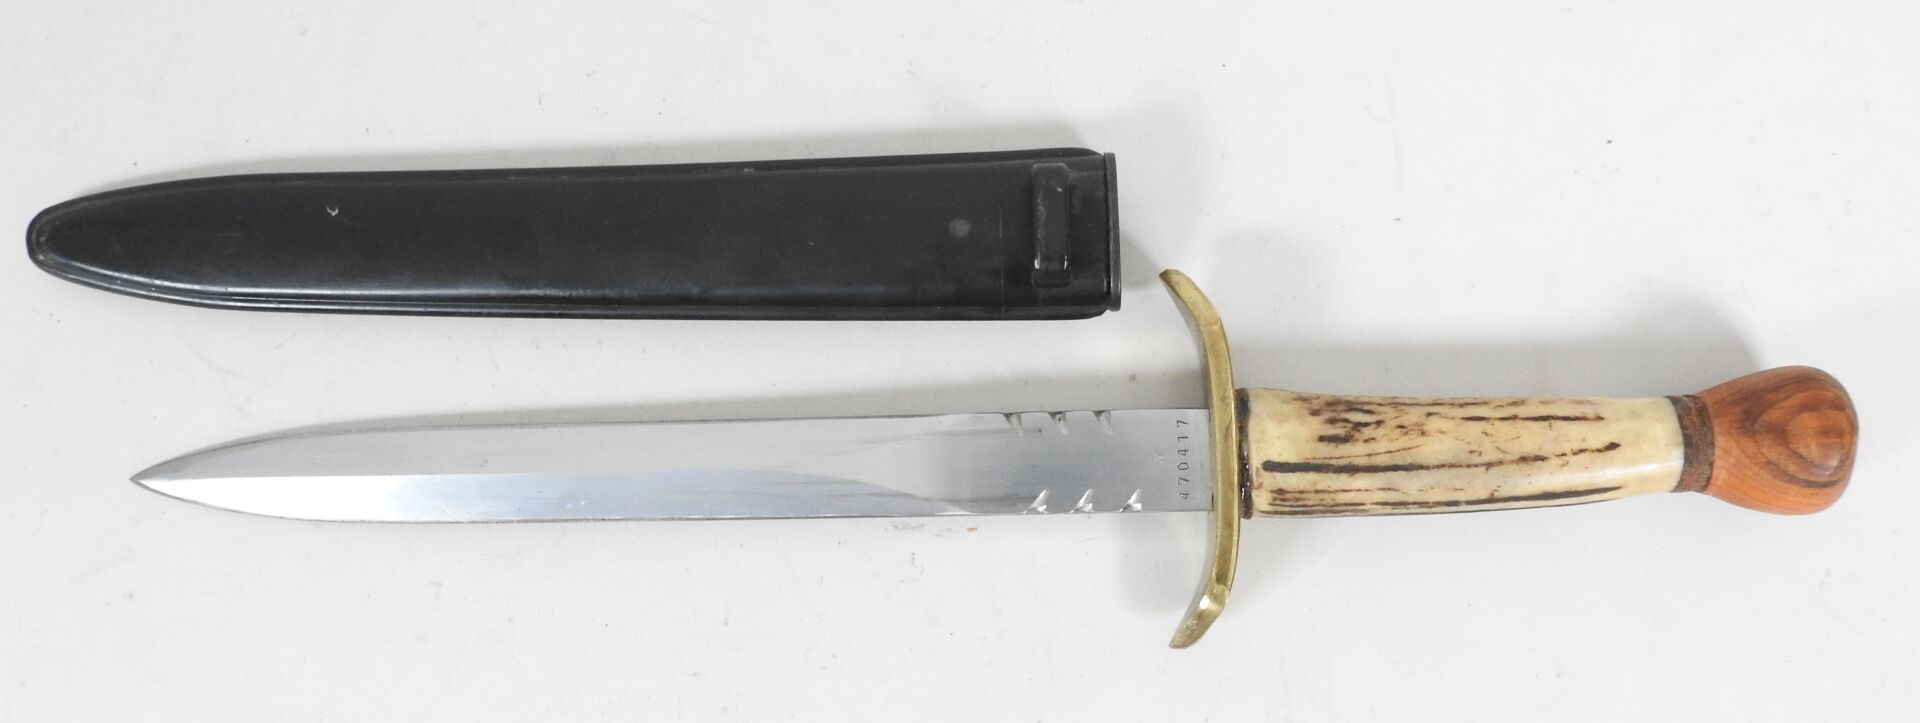 Null 狩猎匕首由24厘米的刺刀刃制成，黄铜护手，鹿角手柄，木制鞍座。

配有黑色塑料刺刀刀鞘。

总长度：37厘米。